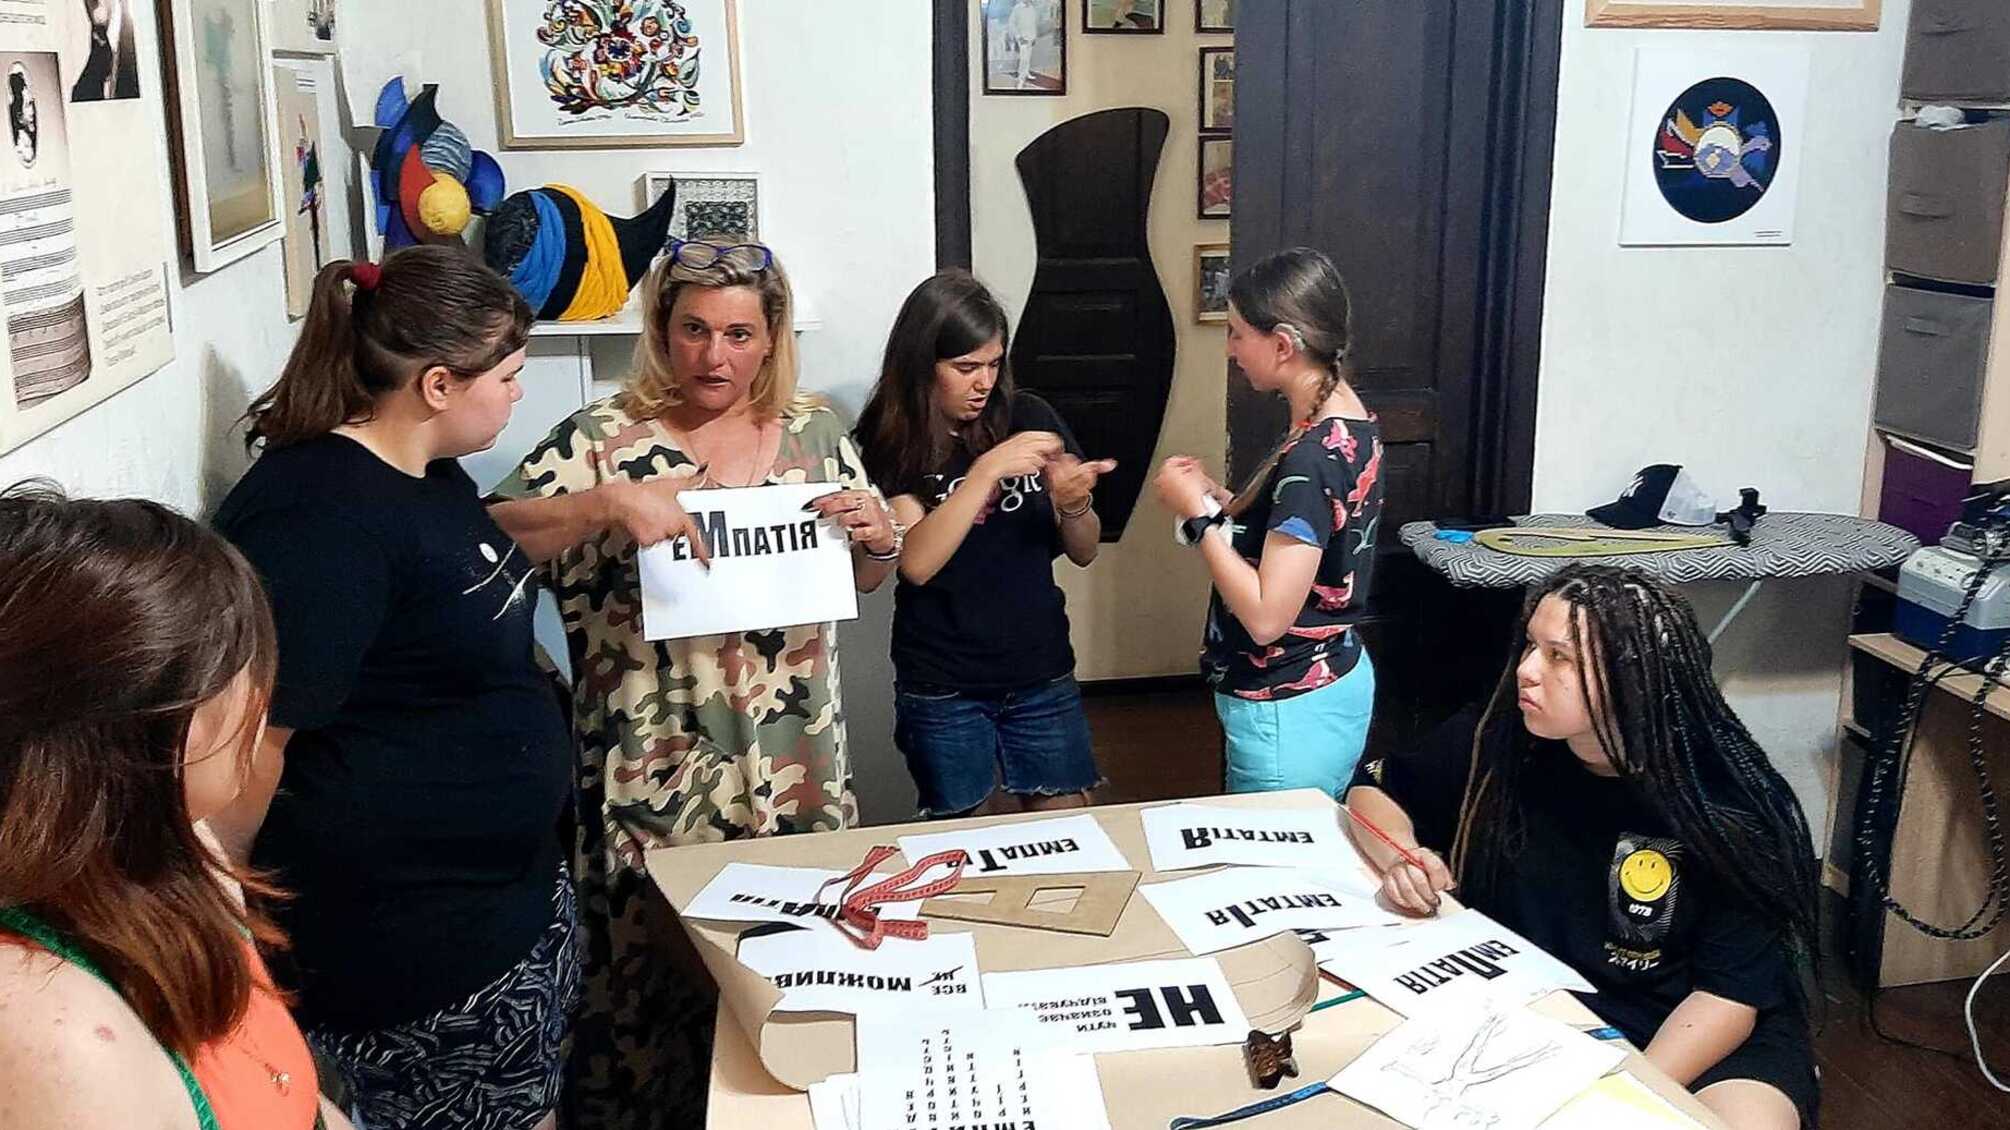 Відновлення через моду: у Києві підлітки створюють унікальну колекцію одягу 'Емпатія'